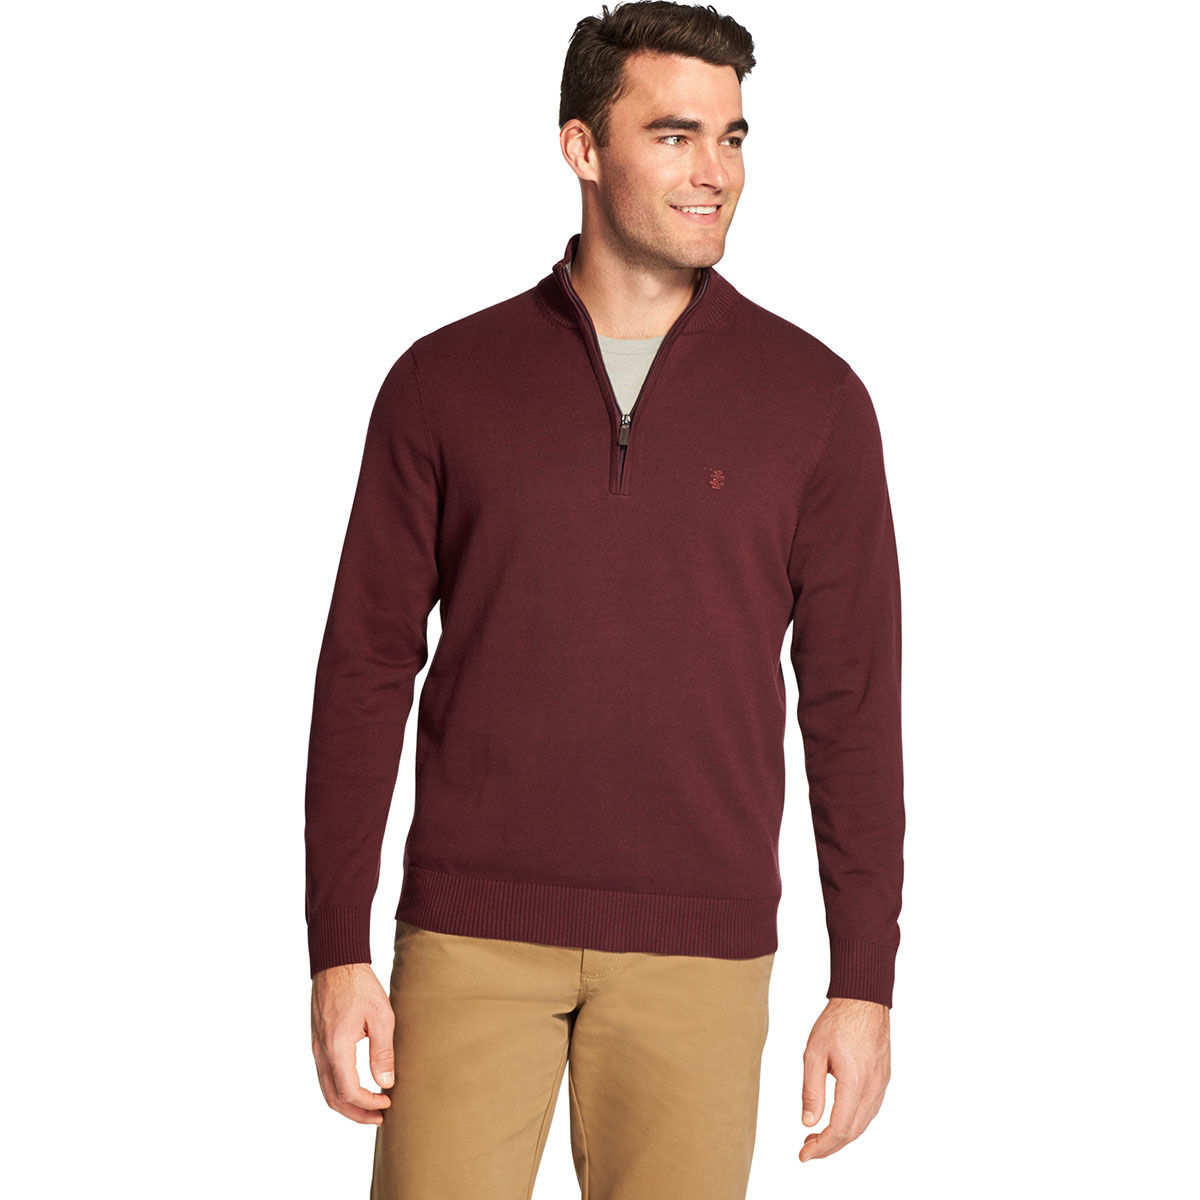 Izod Men's Premium Essentials 1/4 Zip Sweater - Purple, M